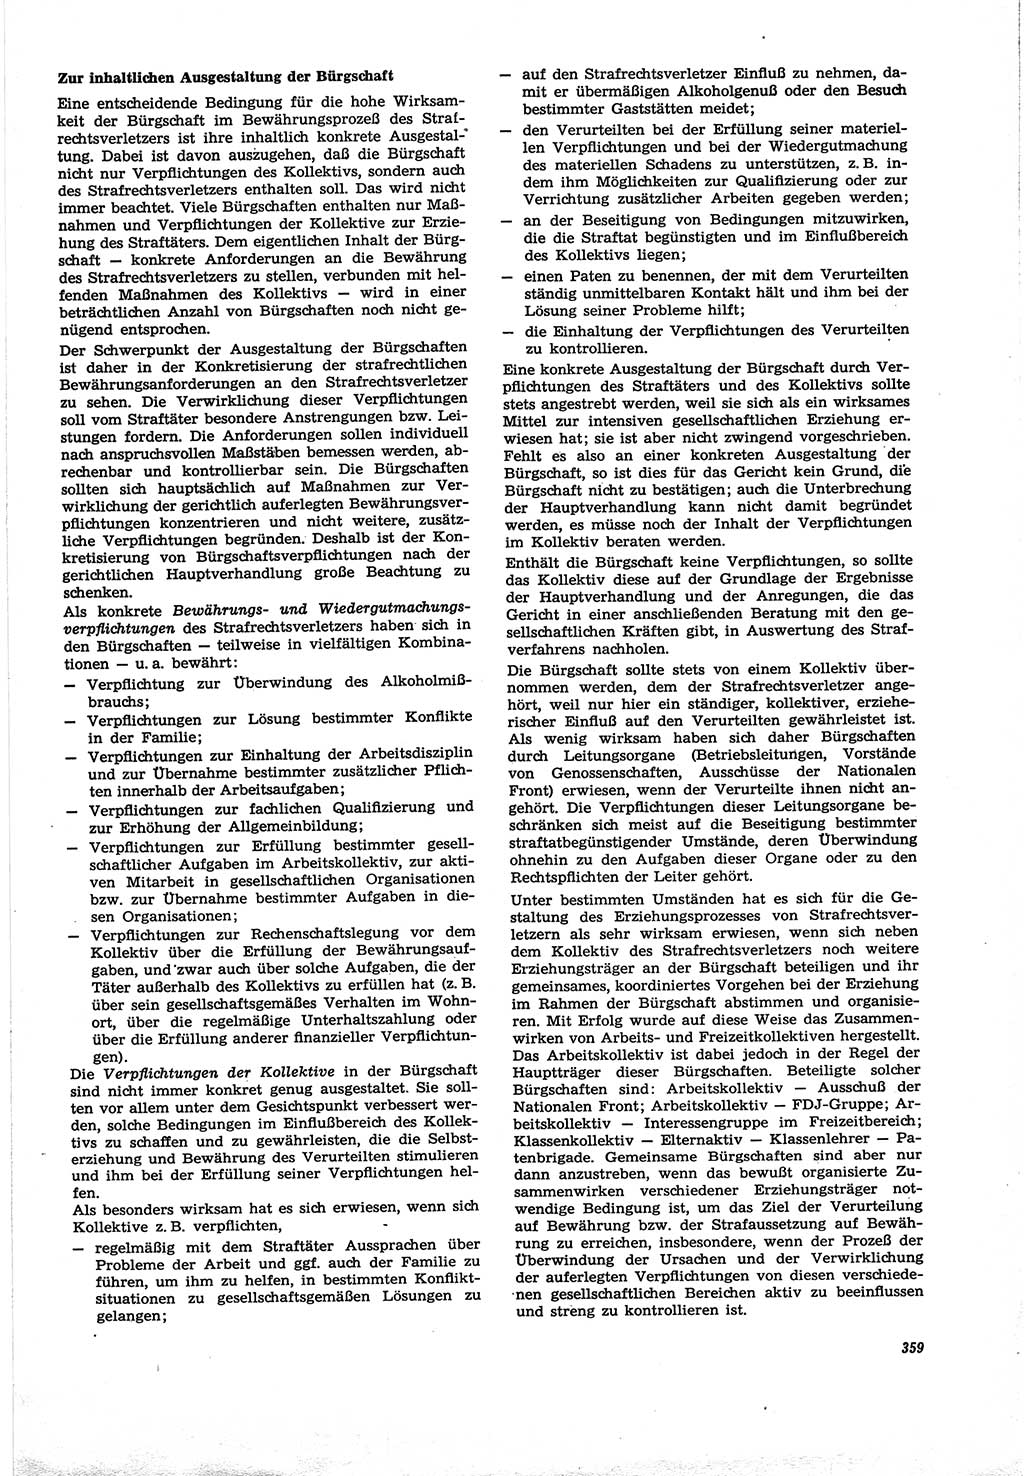 Neue Justiz (NJ), Zeitschrift für Recht und Rechtswissenschaft [Deutsche Demokratische Republik (DDR)], 30. Jahrgang 1976, Seite 359 (NJ DDR 1976, S. 359)